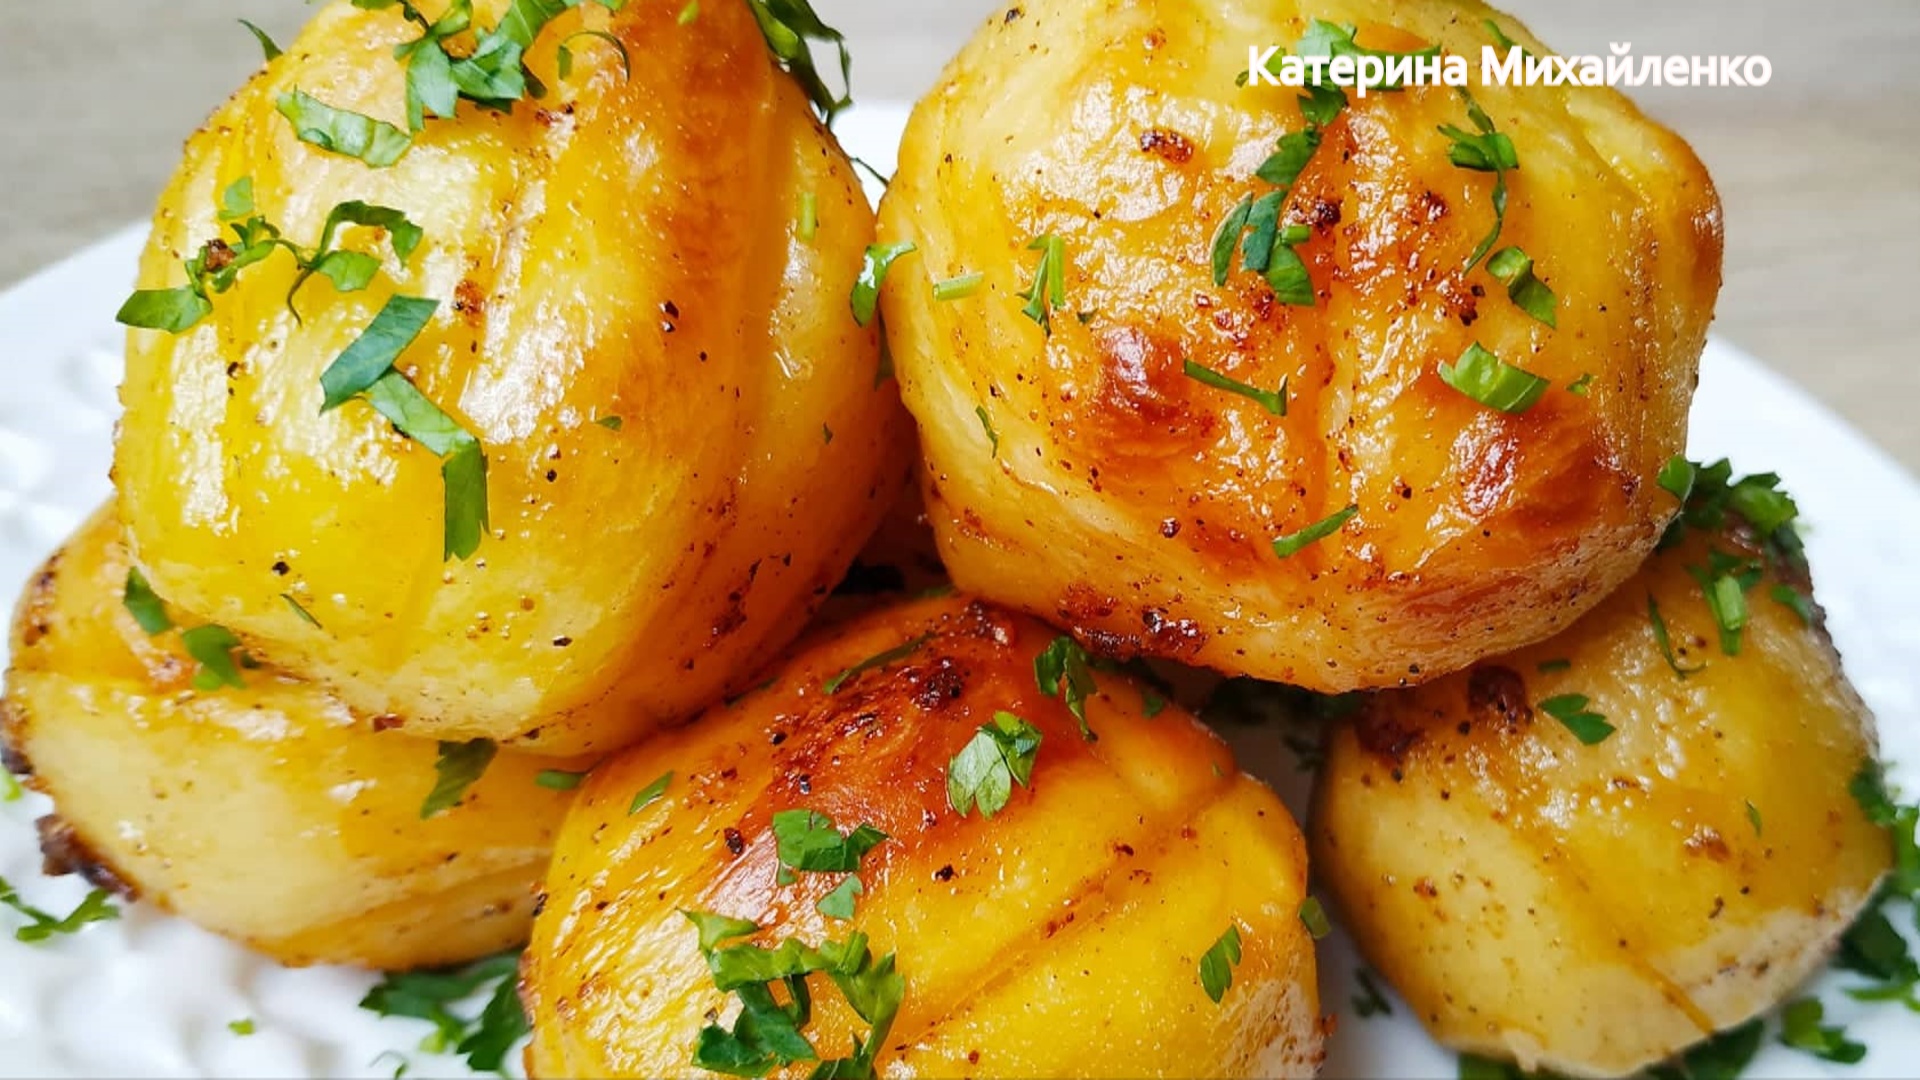 Запечь картошку в духовке рецепты простые. Картошка в духовке. Отварная картошка запеченная в духовке. Целая картошка запеченная в духовке. Картофель с корочкой в духовке.